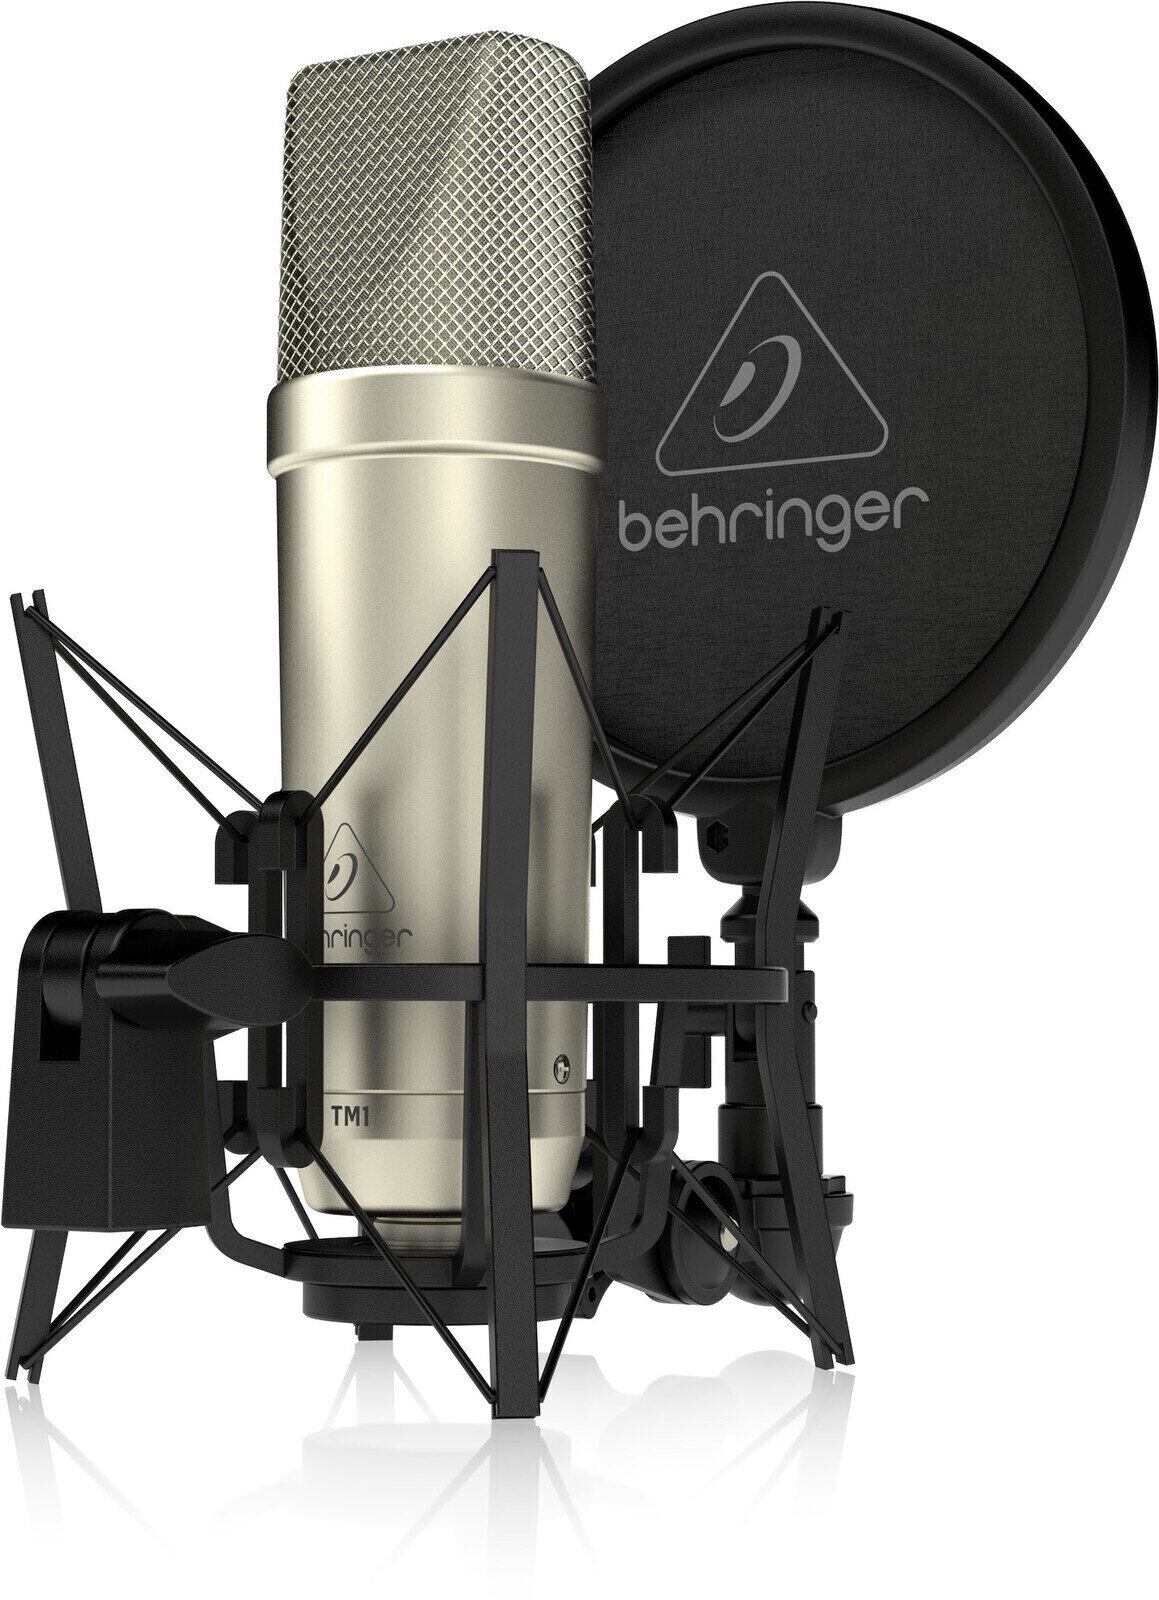 Microfone condensador de estúdio Behringer TM1 Microfone condensador de estúdio